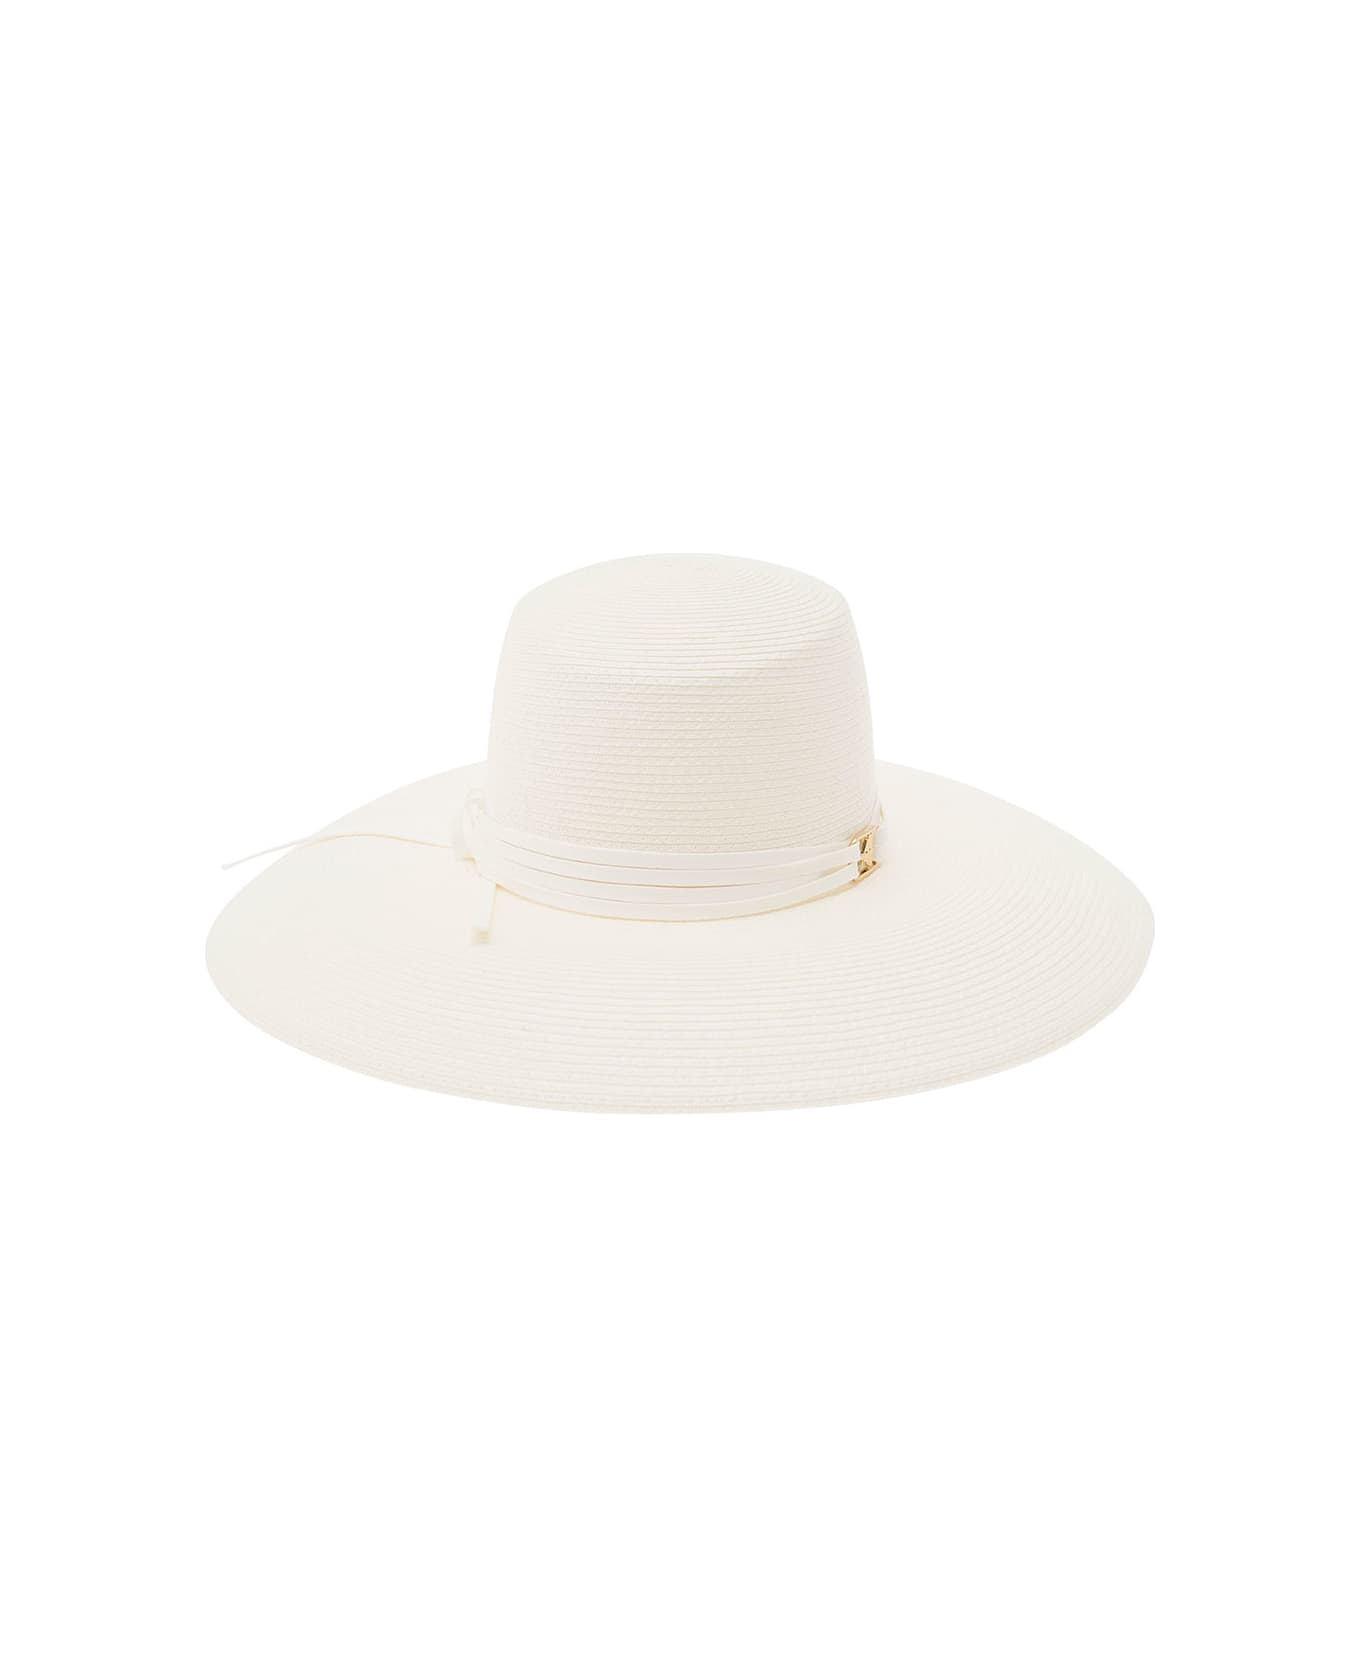 Alberta Ferretti White Wide Hat In Straw Woman - White